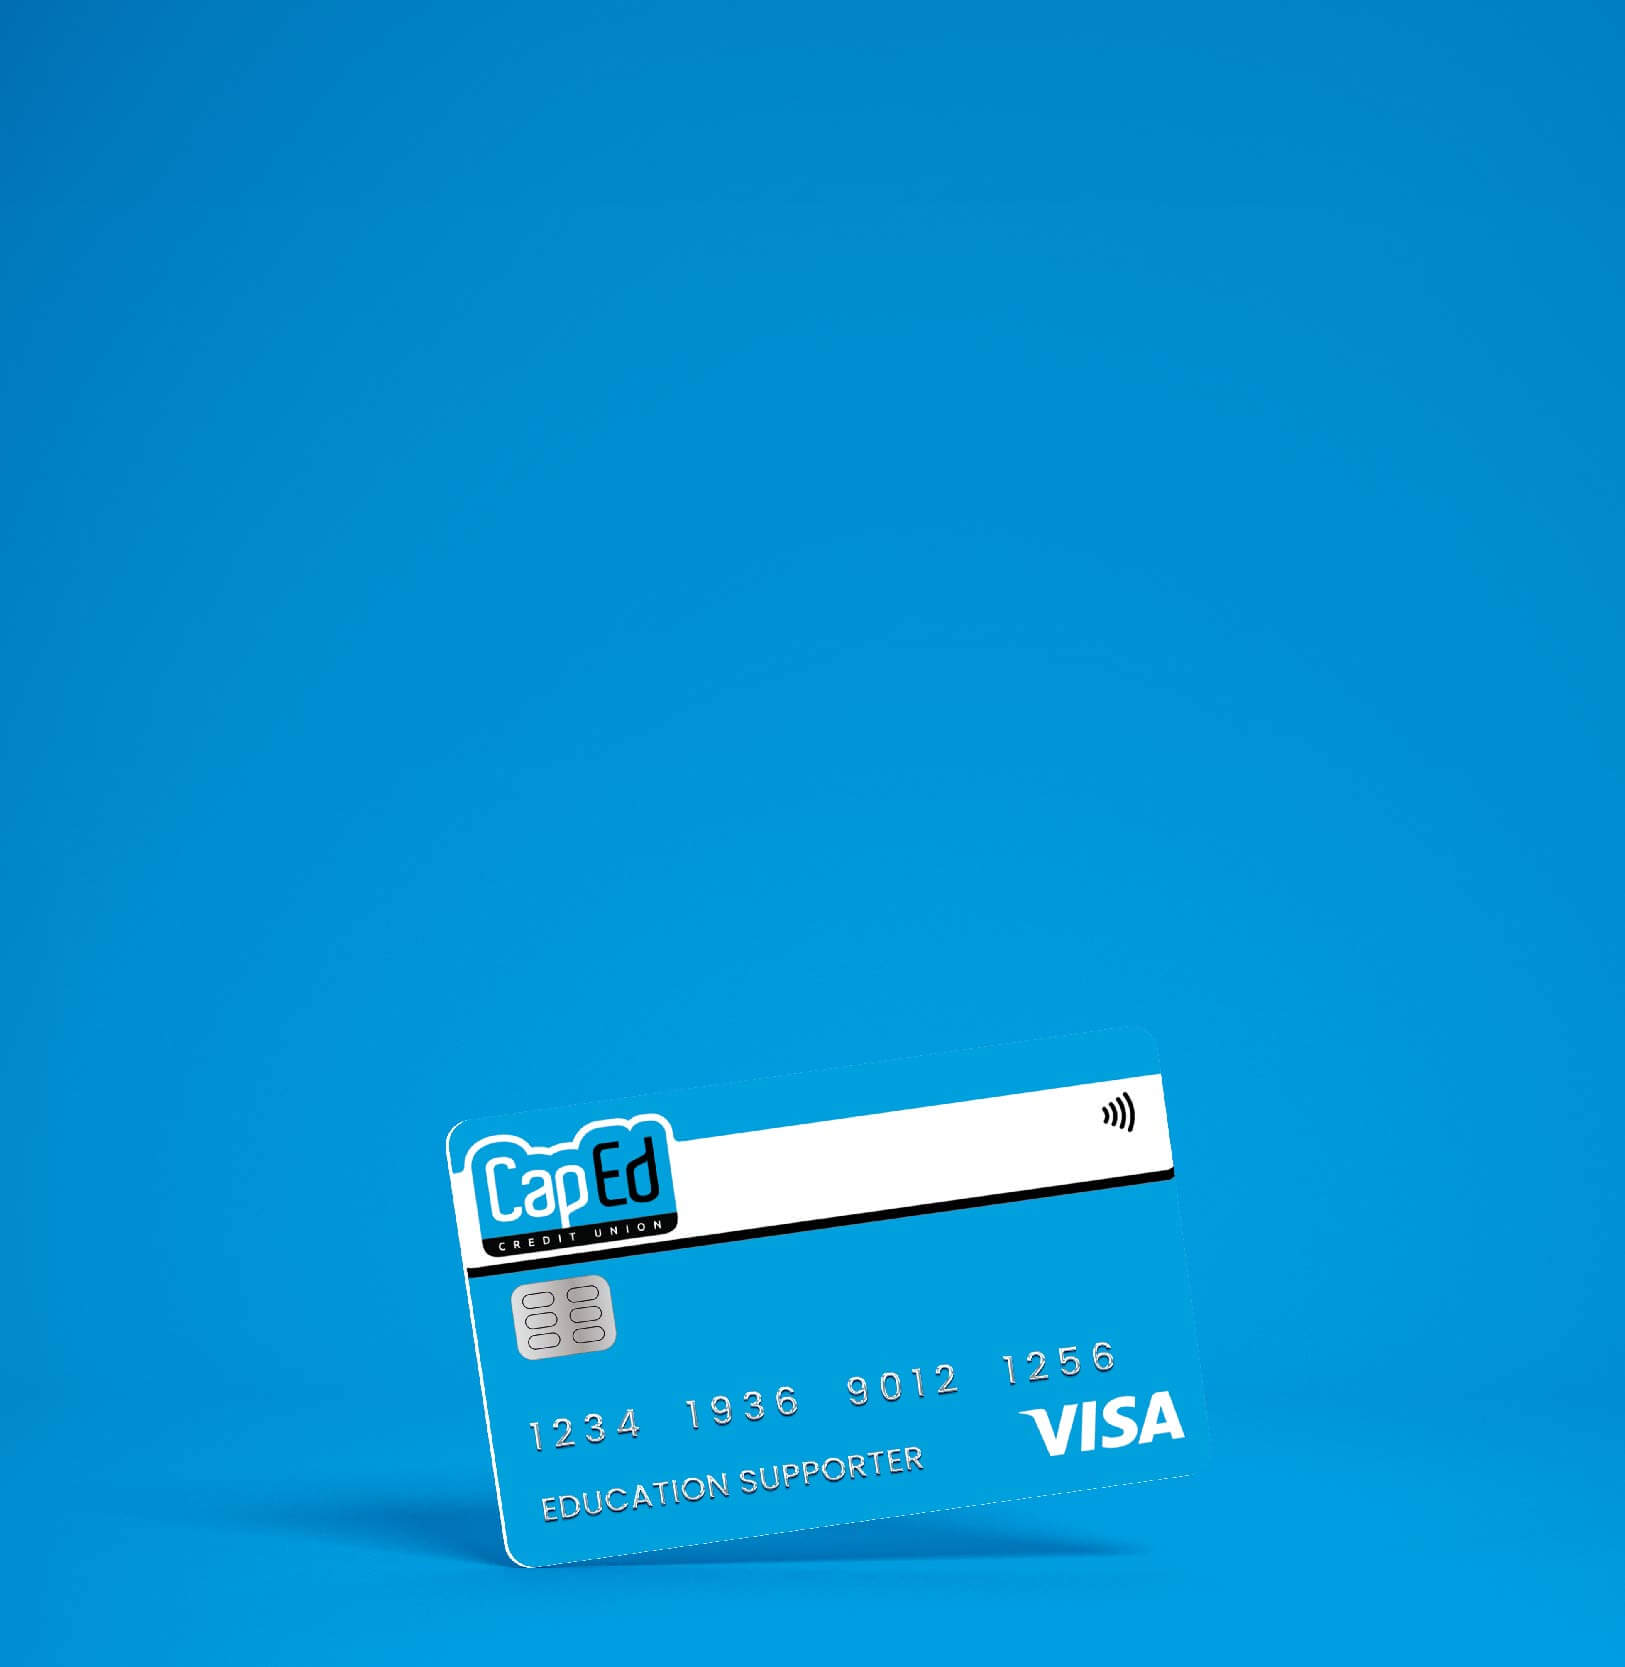 CapEd debit card.